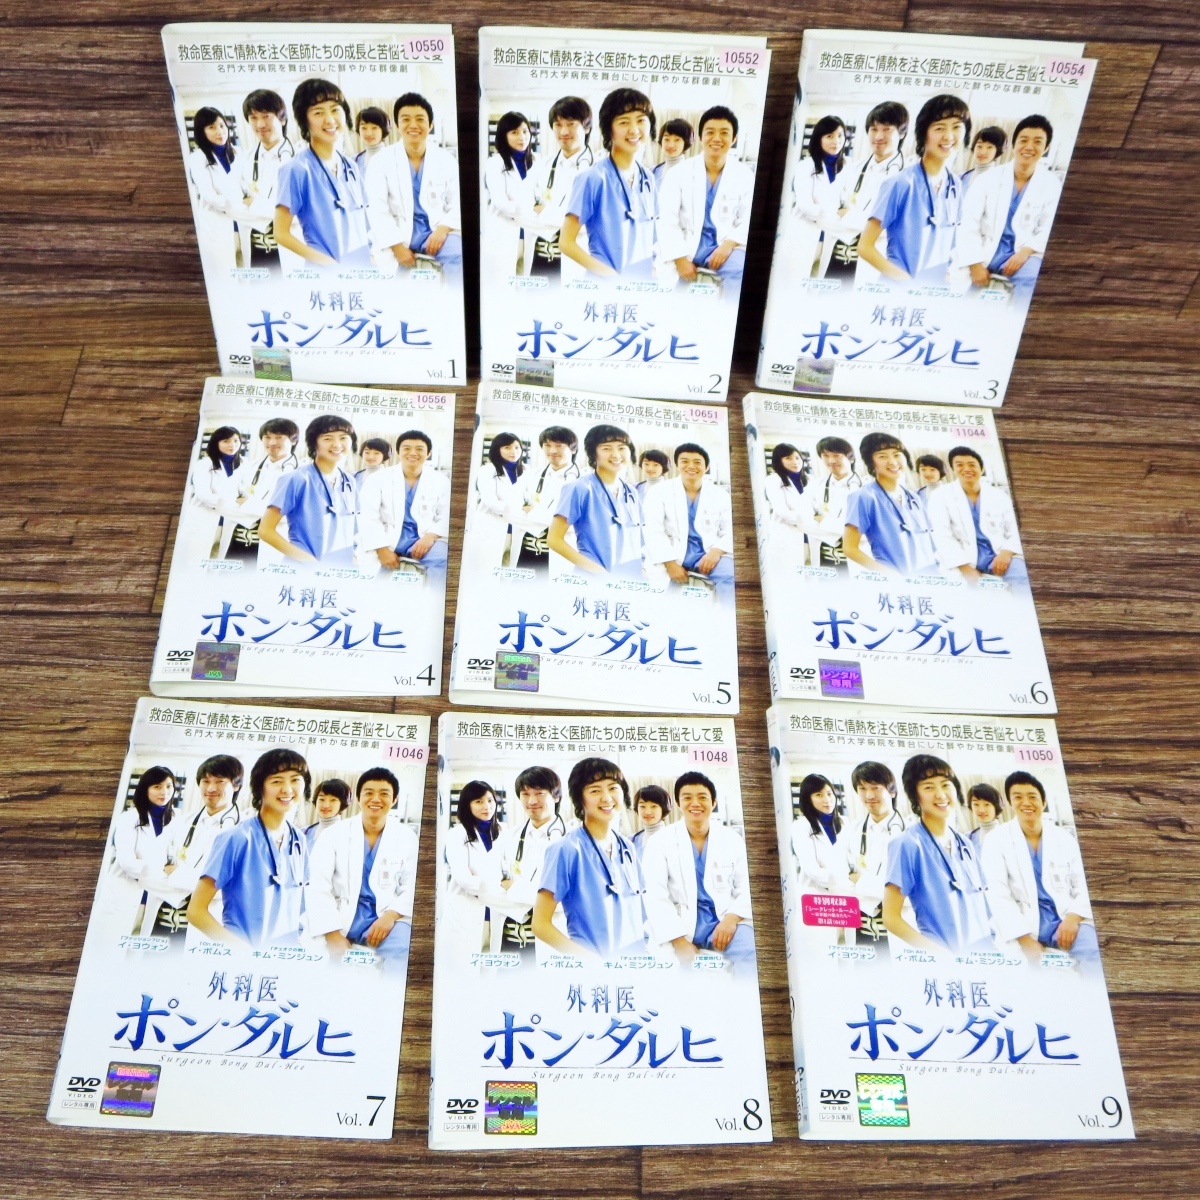 7679円 【お年玉セール特価】 医師ヨハン DVD-BOX1〈8枚組〉